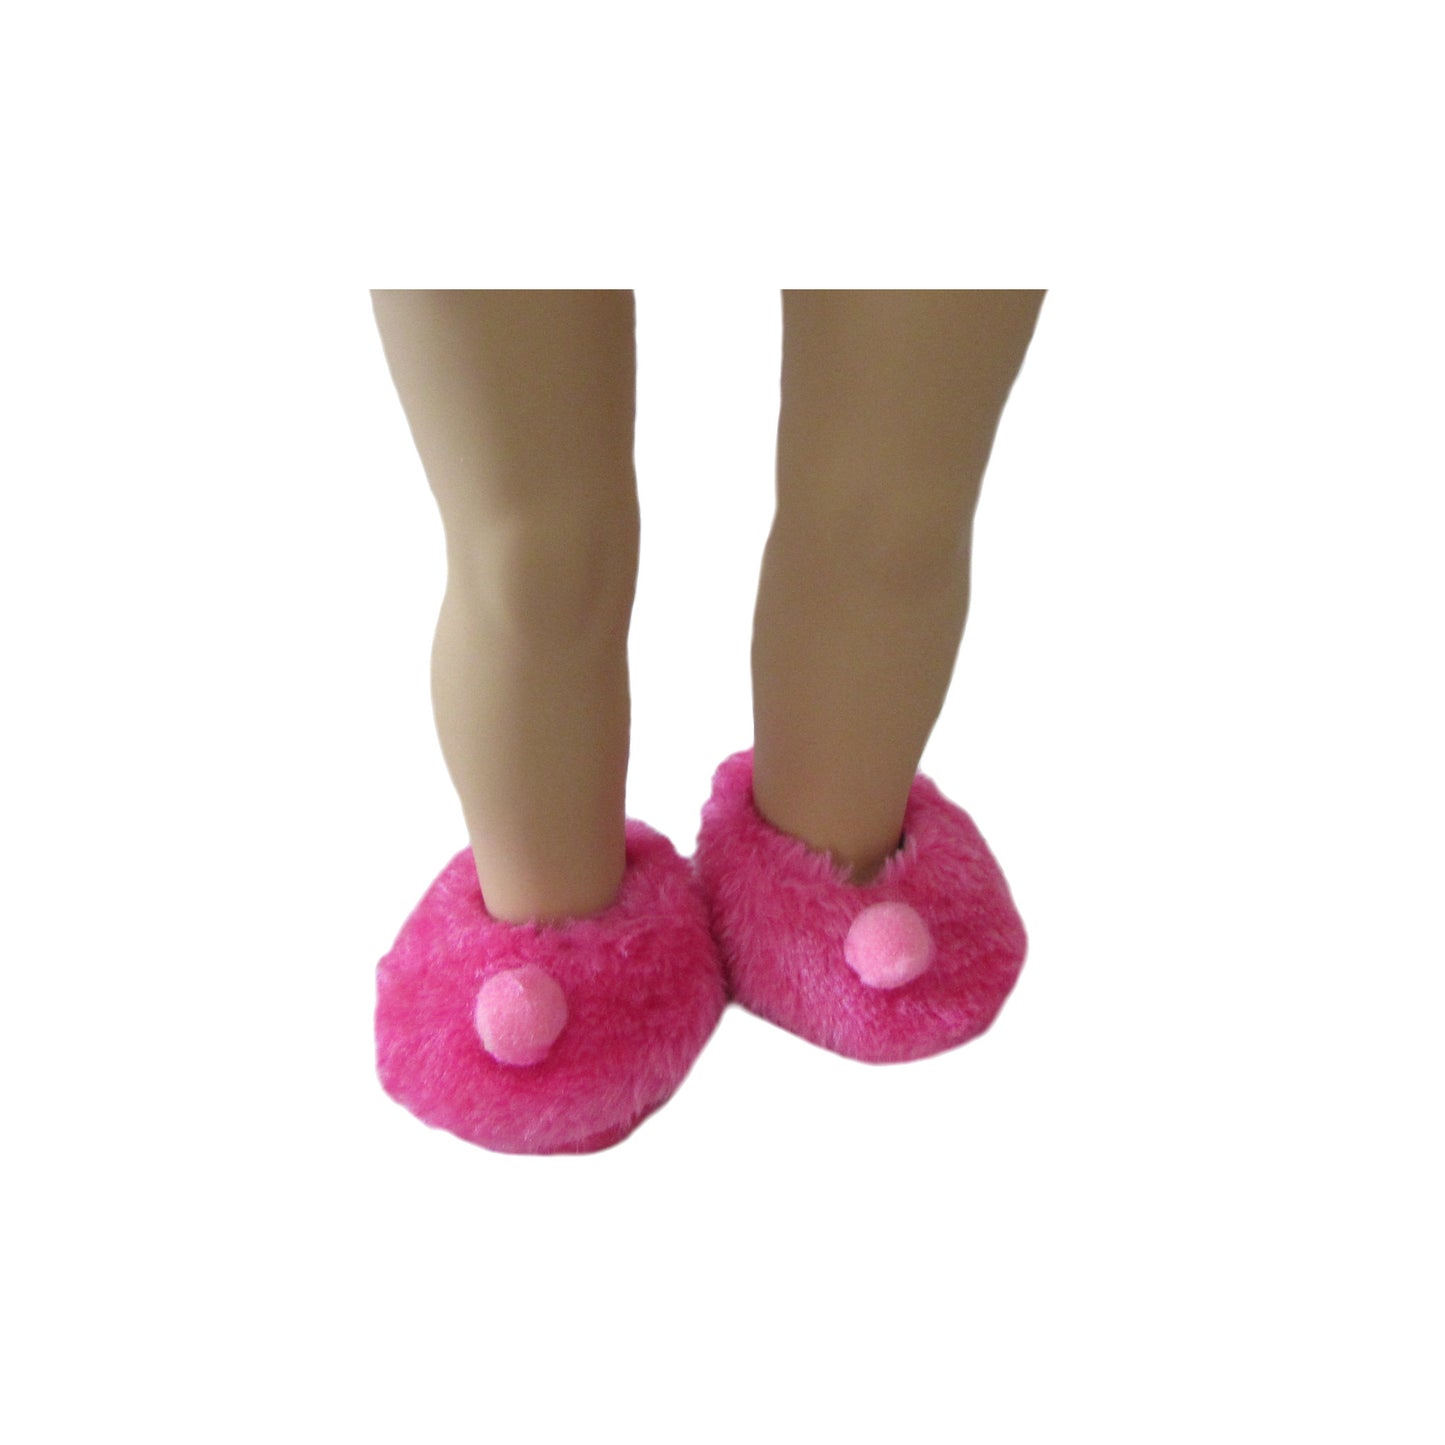 Pink Fuzzy Slippers with a Pom-pom for 18-inch Dolls